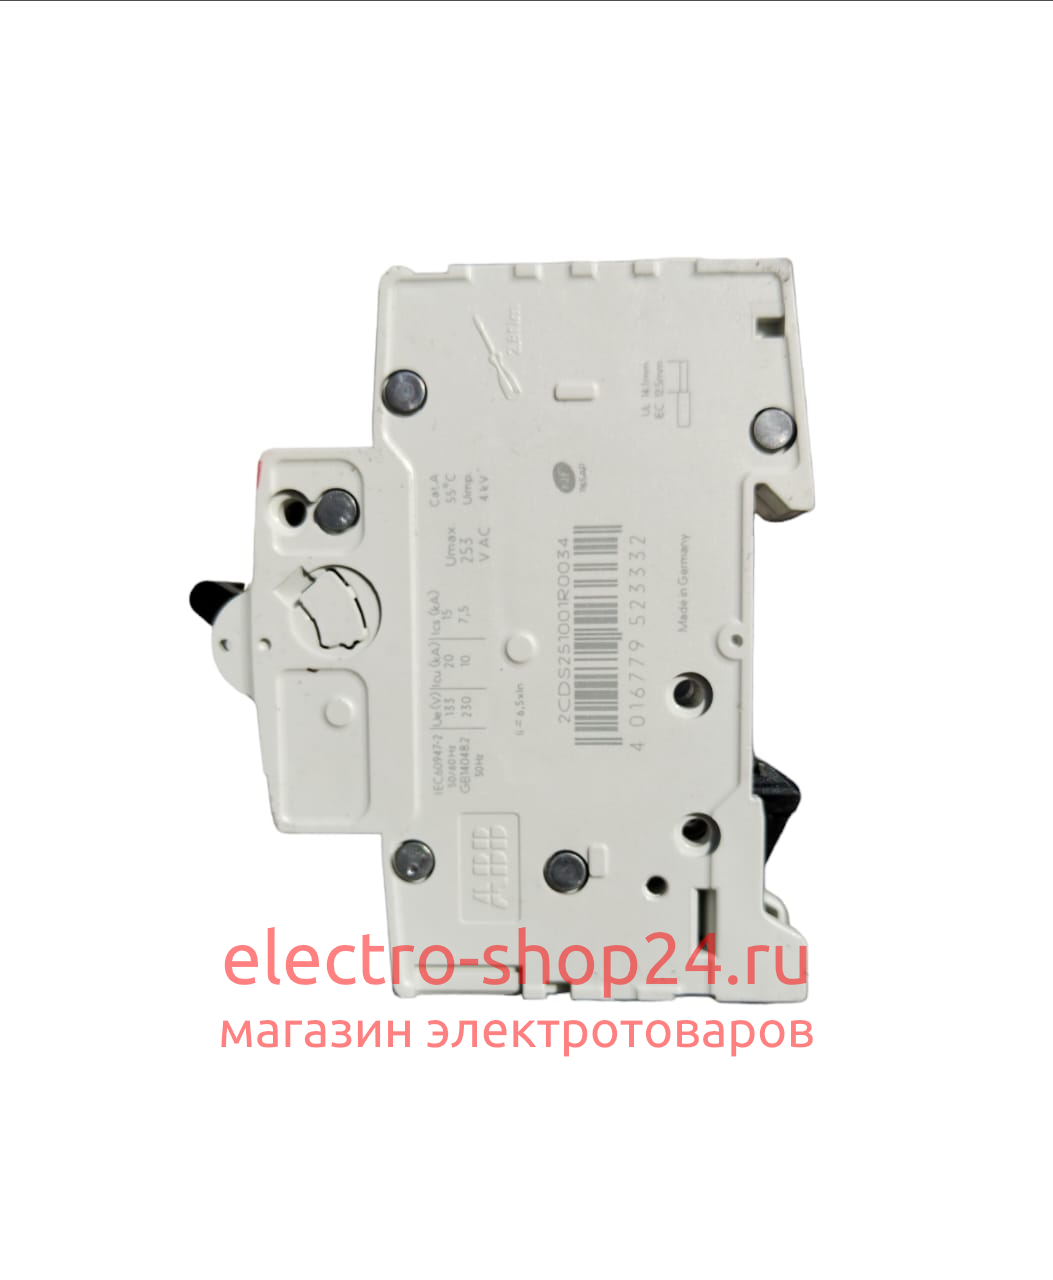 S201 C16 Автоматический выключатель 1-полюсный 16А 6кА (хар-ка C) ABB 2CDS251001R0164 2CDS251001R0164 - магазин электротехники Electroshop